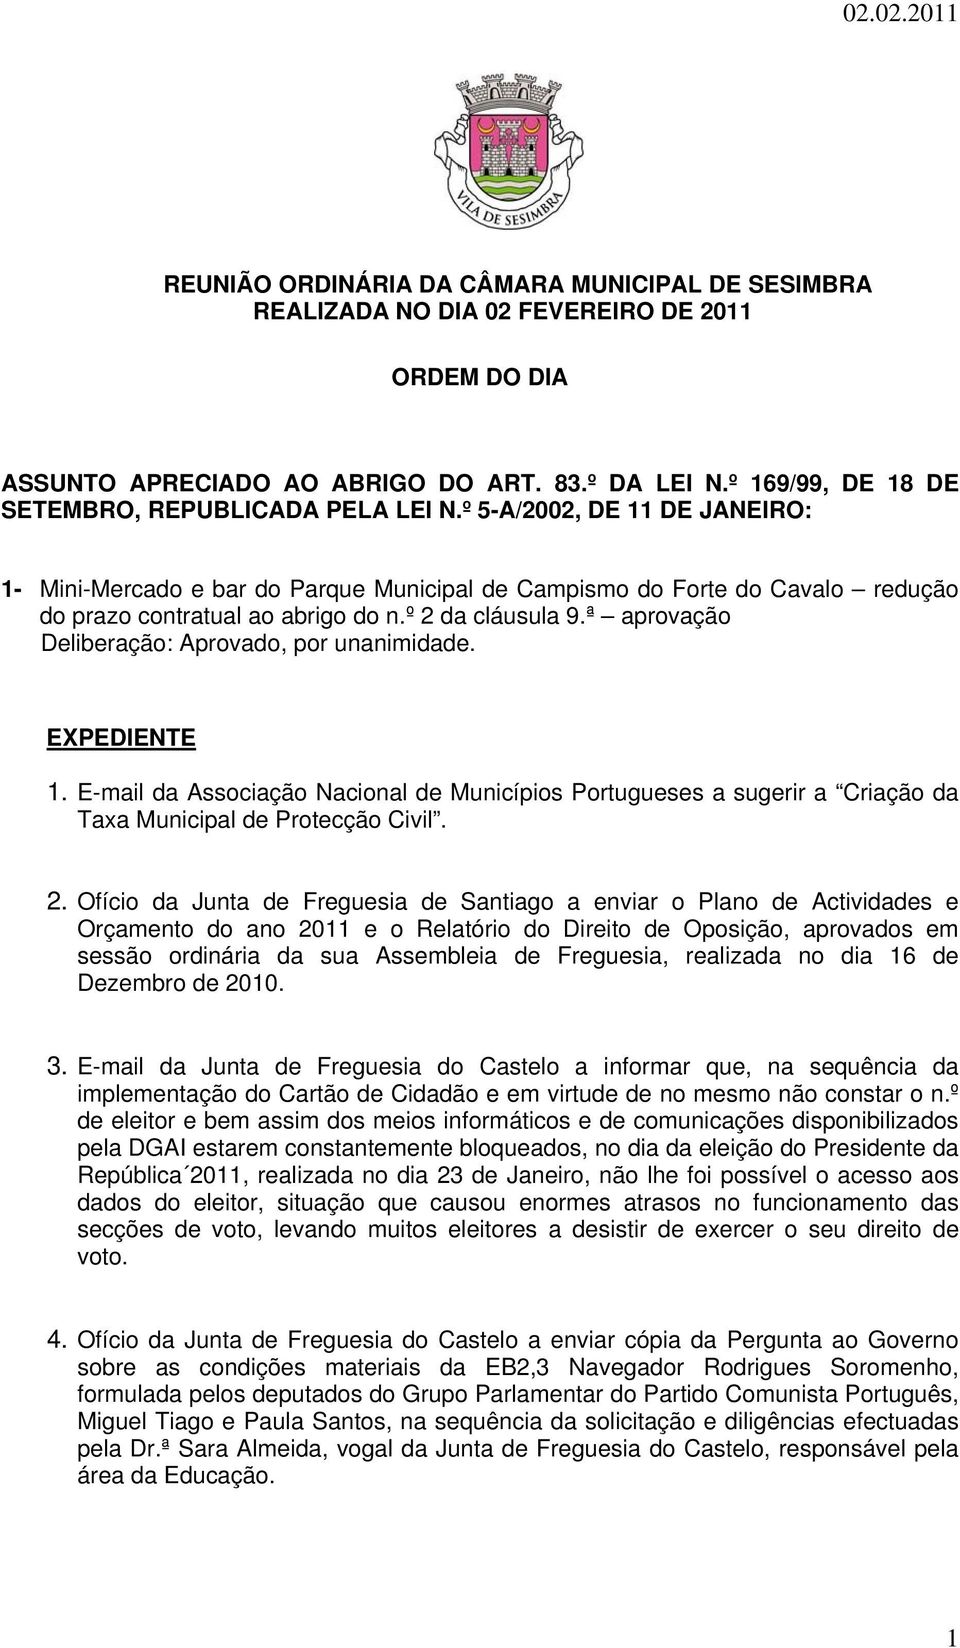 º 2 da cláusula 9.ª aprovação EXPEDIENTE 1. E-mail da Associação Nacional de Municípios Portugueses a sugerir a Criação da Taxa Municipal de Protecção Civil. 2. Ofício da Junta de Freguesia de